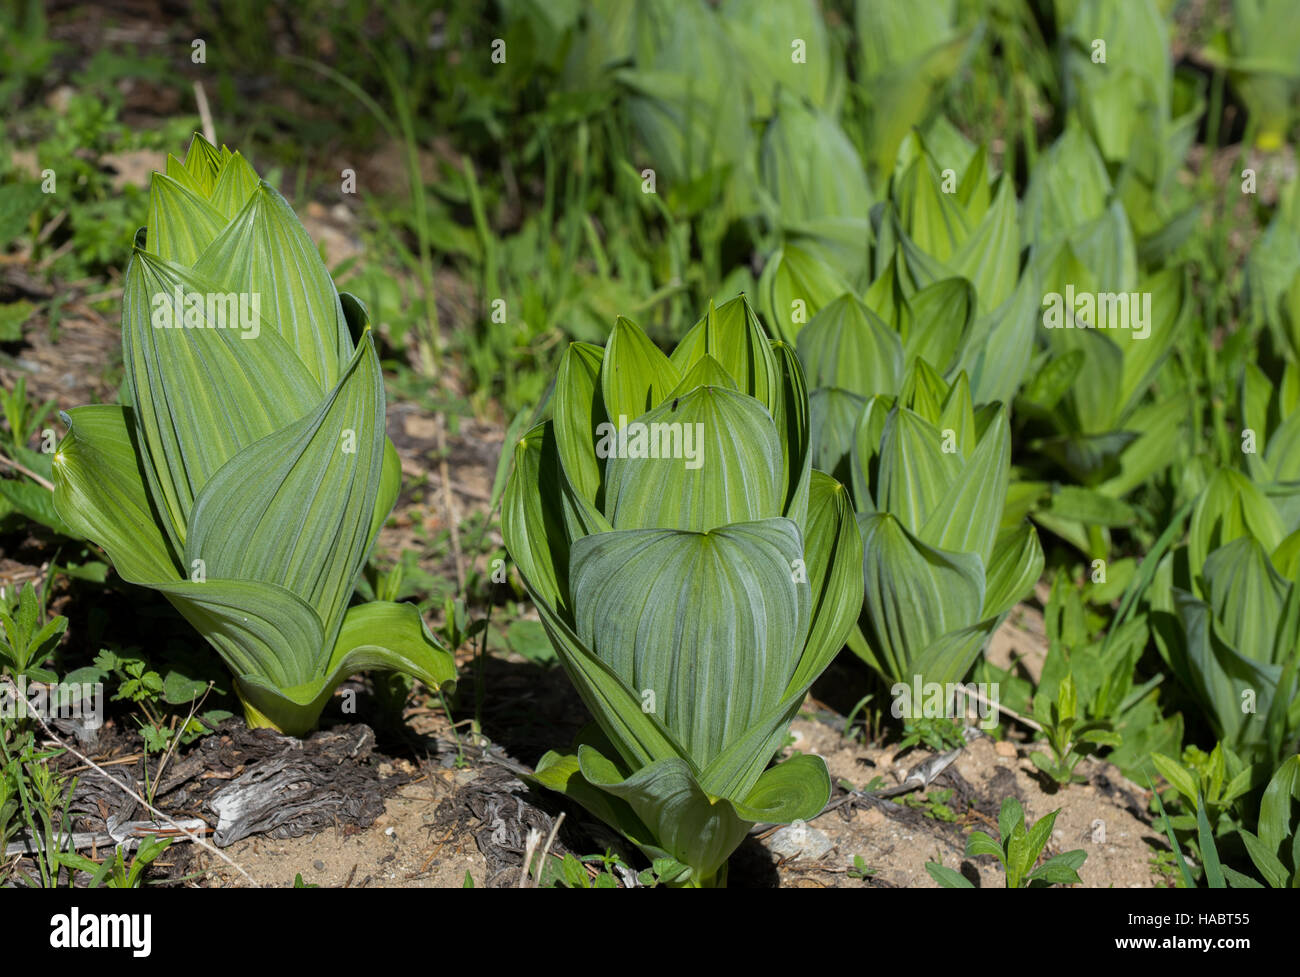 Skunk cabbage in yosemite national park Stock Photo